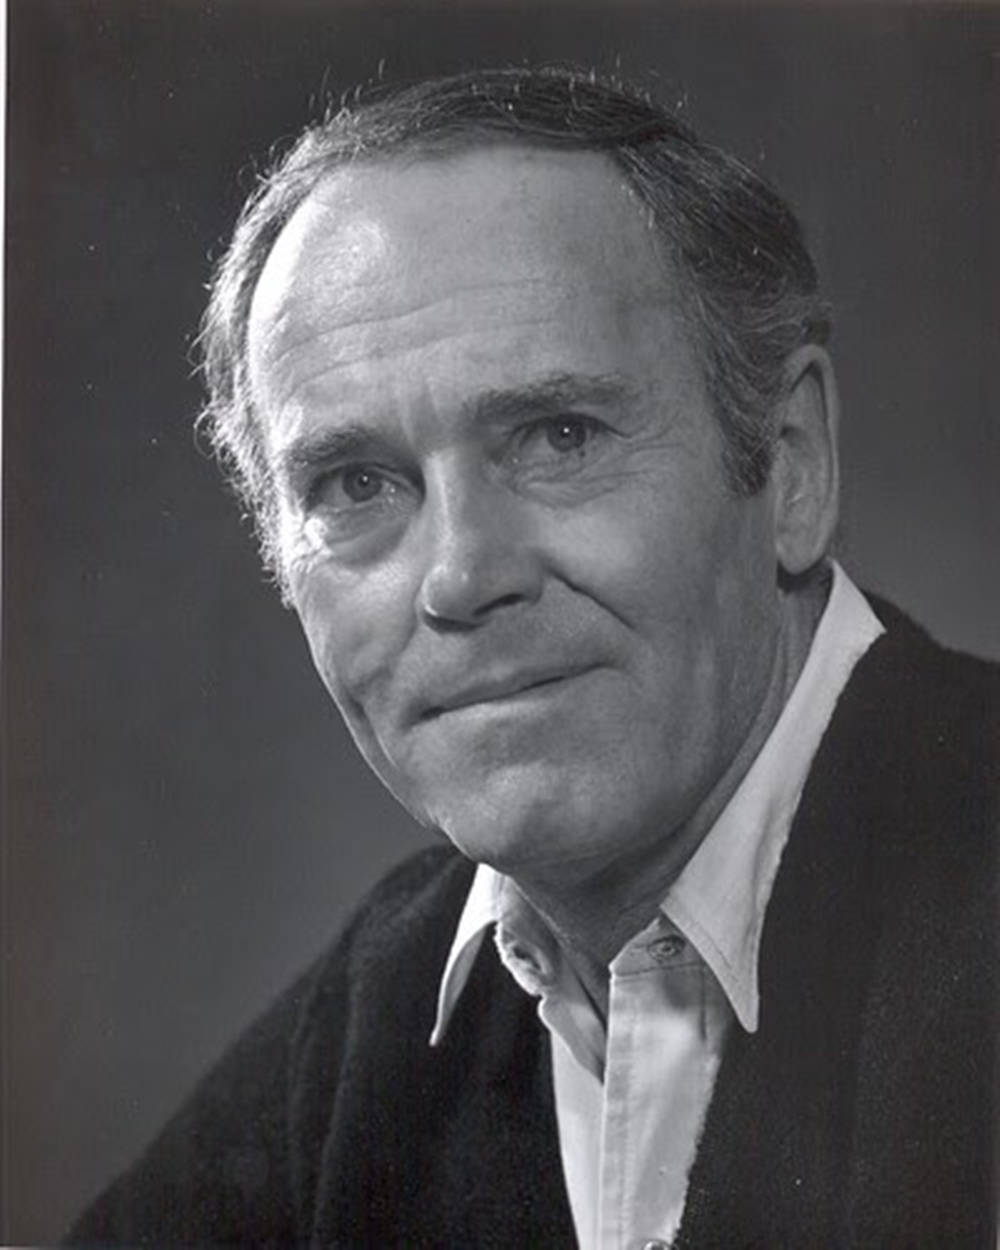 Actorde Hollywood En Blanco Y Negro, Retrato De Henry Ford En La Década De 1960. Fondo de pantalla